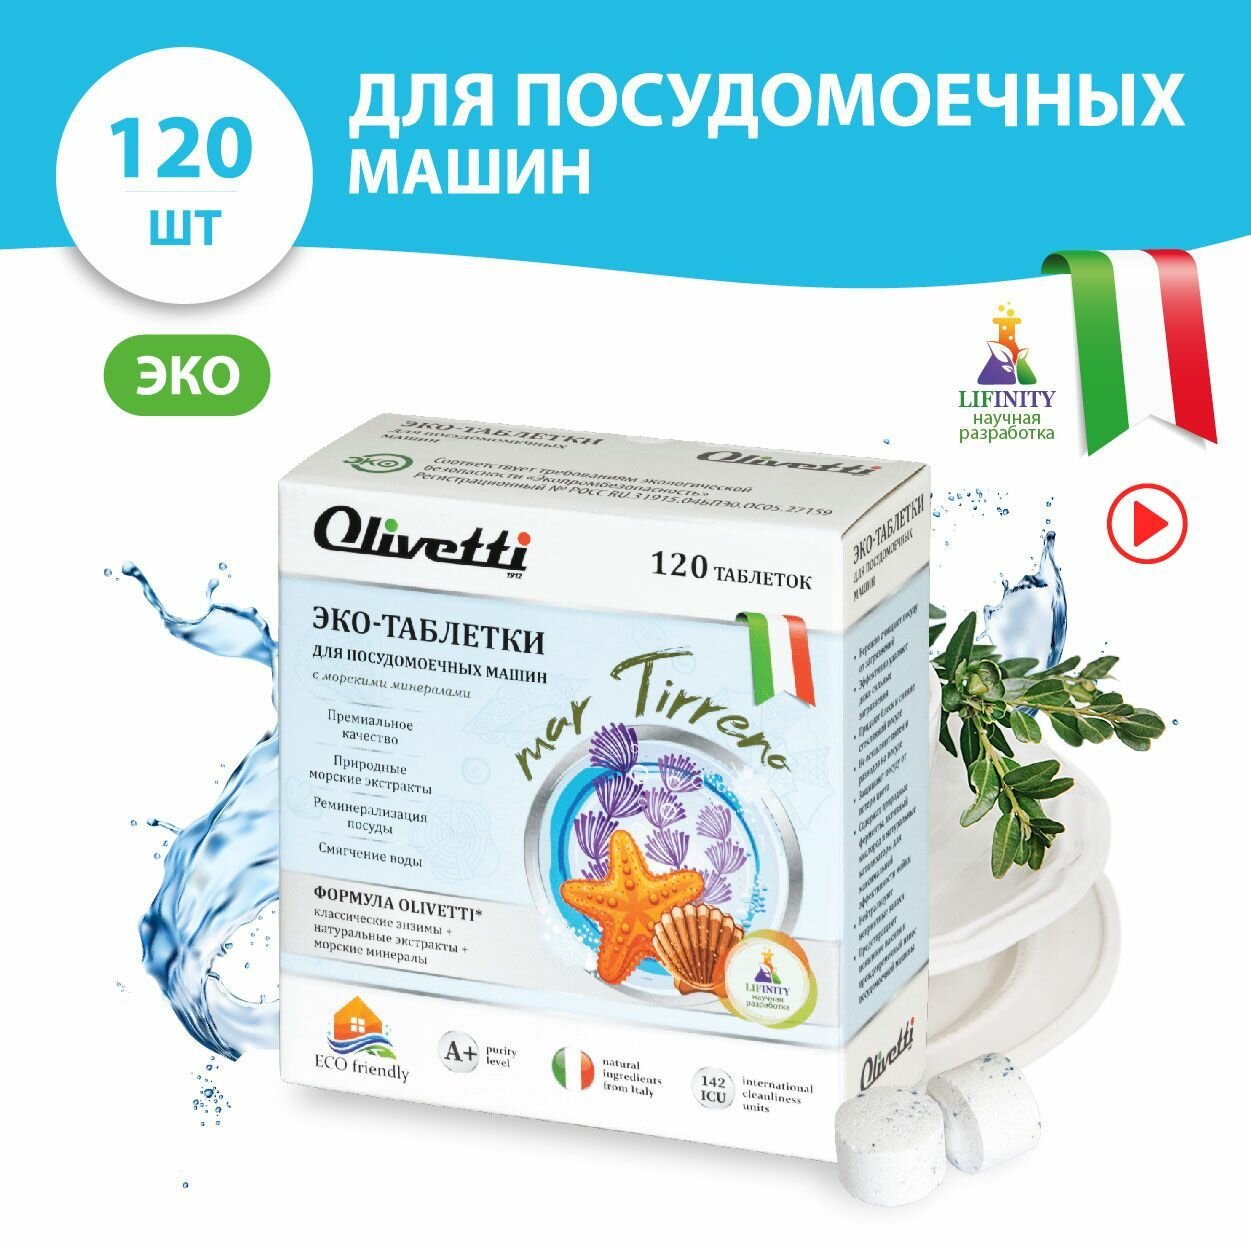 Эко-таблетки для посудомоечных машин Olivetti Морские минералы 120  без пятен и разводов защита цвета натуральные компоненты из Италии